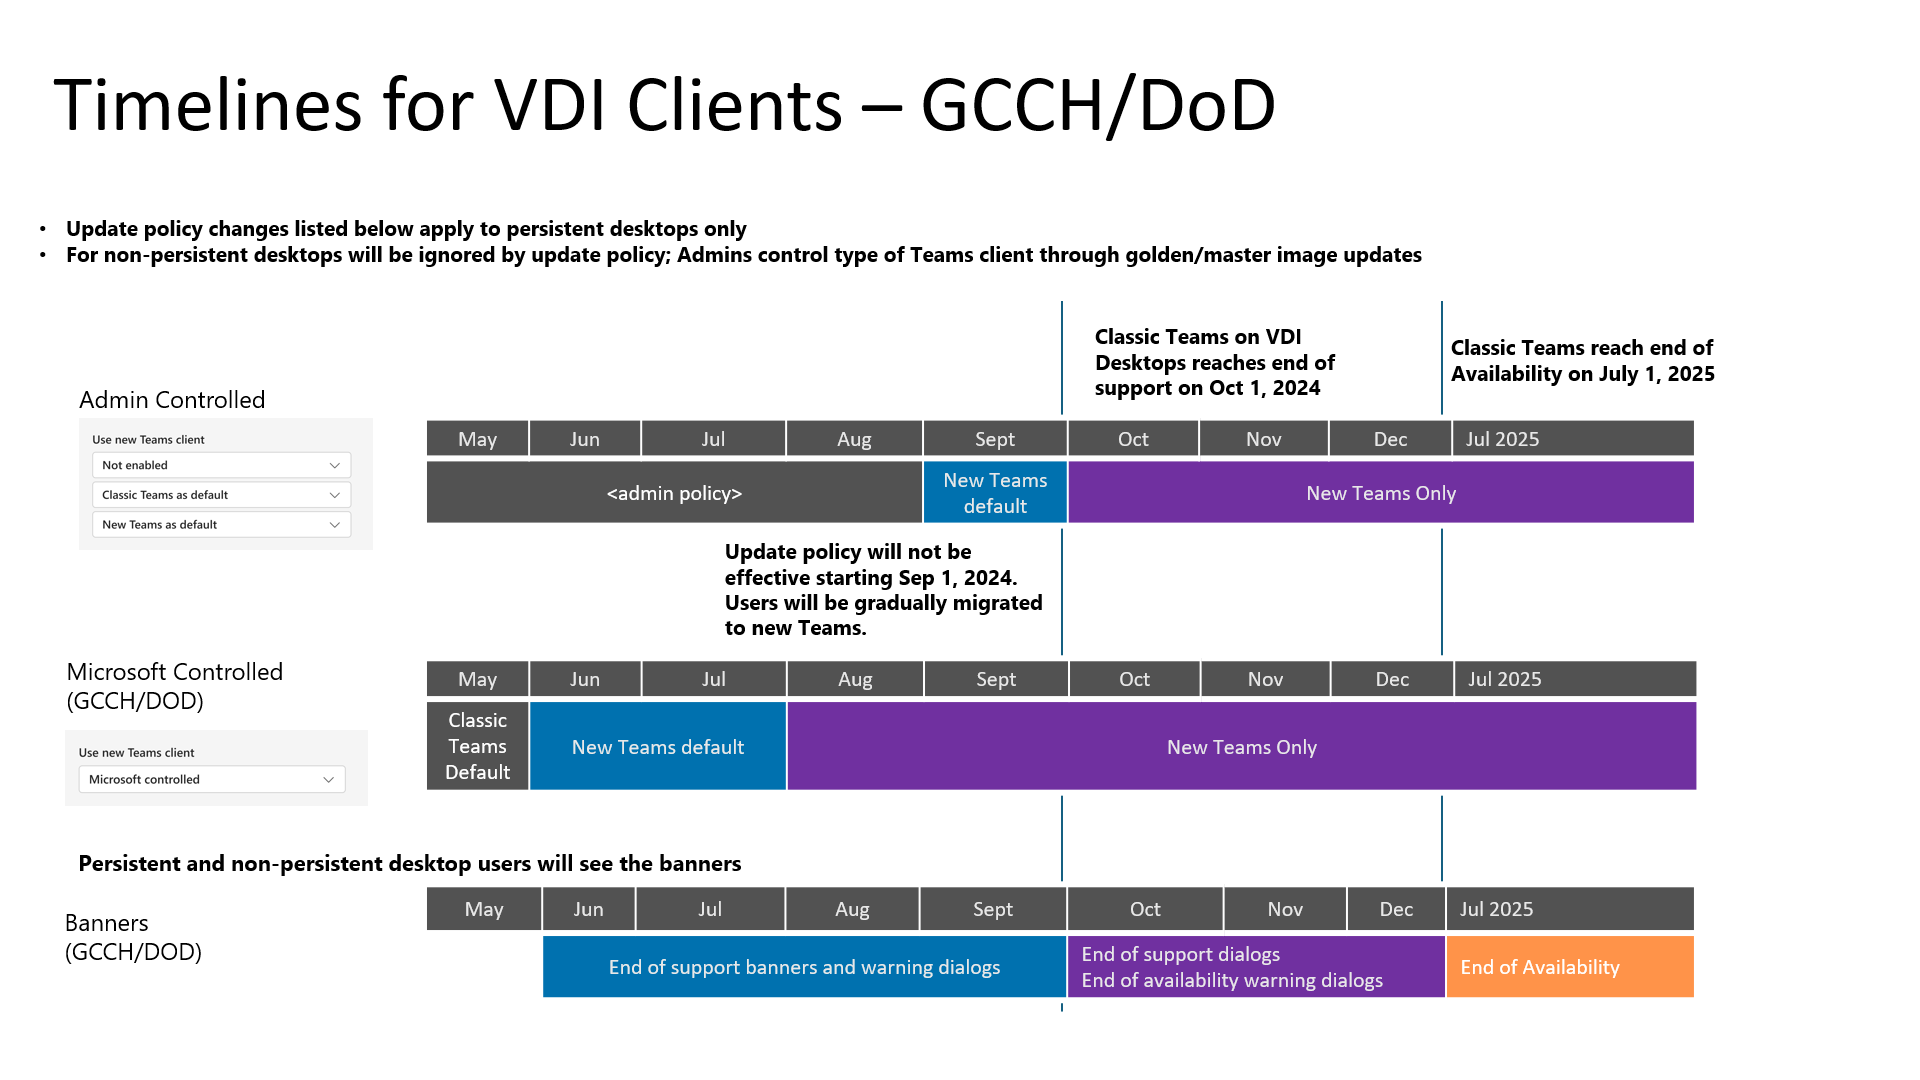 顯示傳統Teams至 VDI 新Teams時程表的圖表，專供 GCCH 和 DoD 租使用者使用。